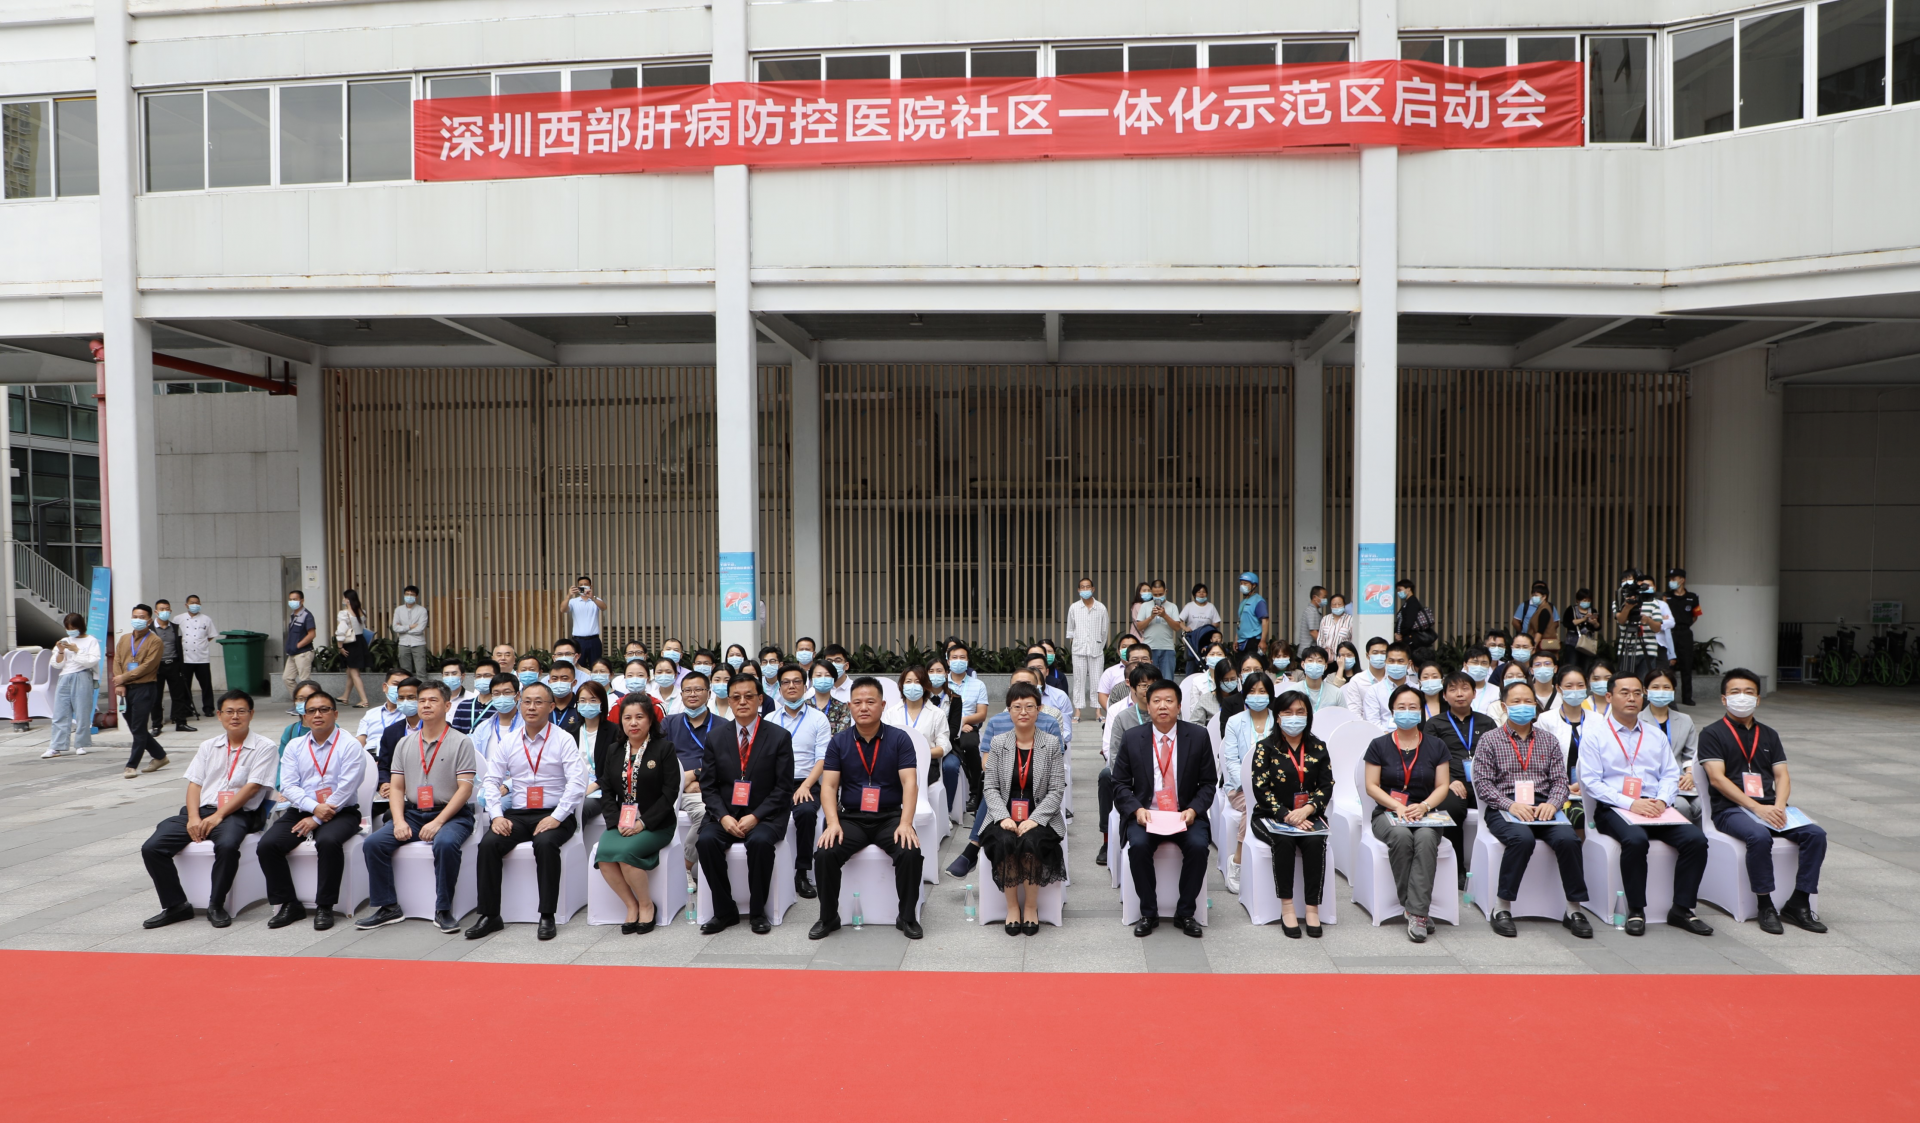 深圳西部医院社区一体化肝病防控示范区建设正式启动，南山两个社区试点打造肝病防控示范区